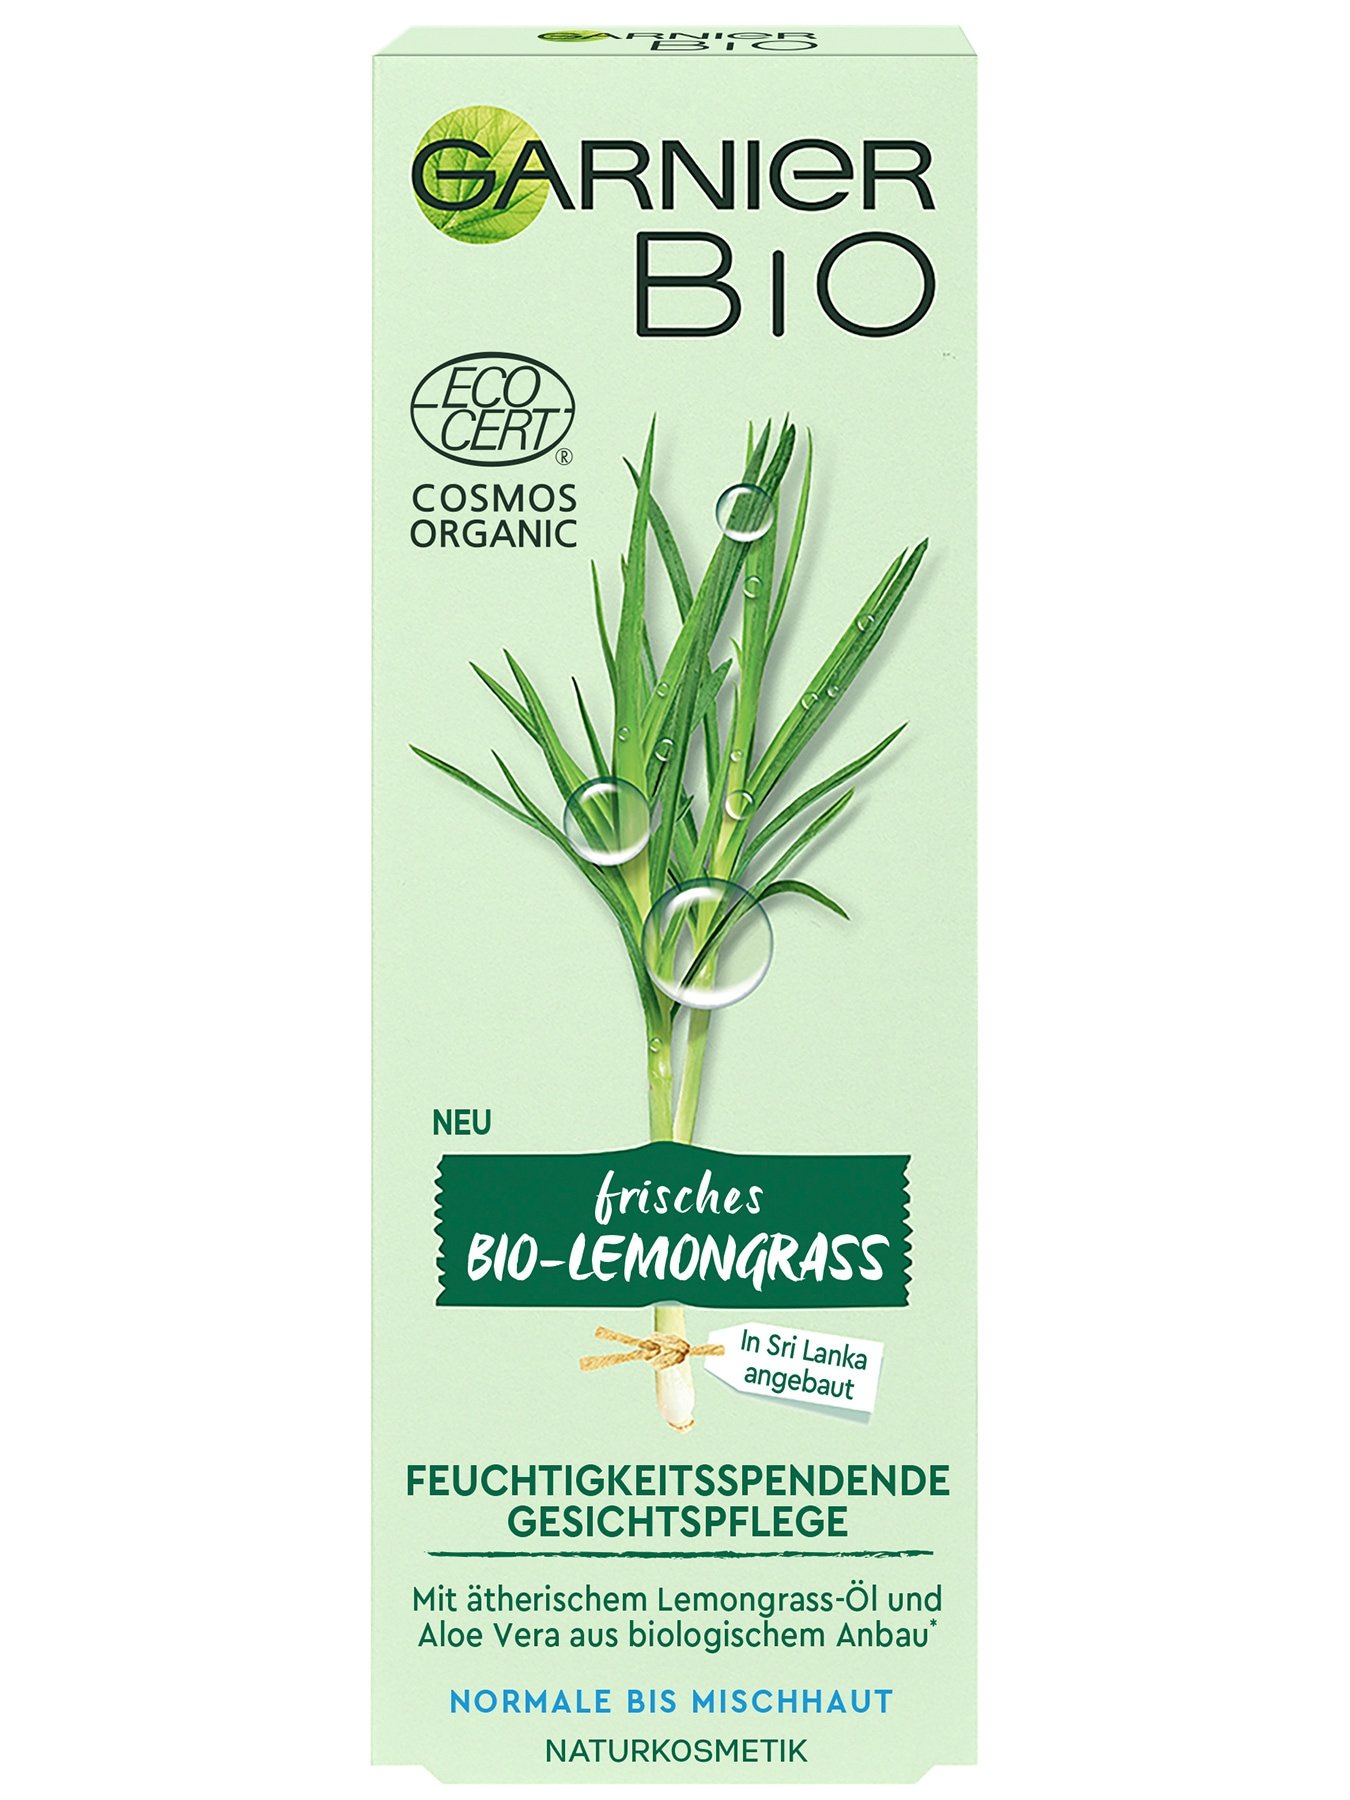 Garnier Bio Lemongrass Feuchtigkeitsspendende Gesichtspflege - Ansicht Verpackung